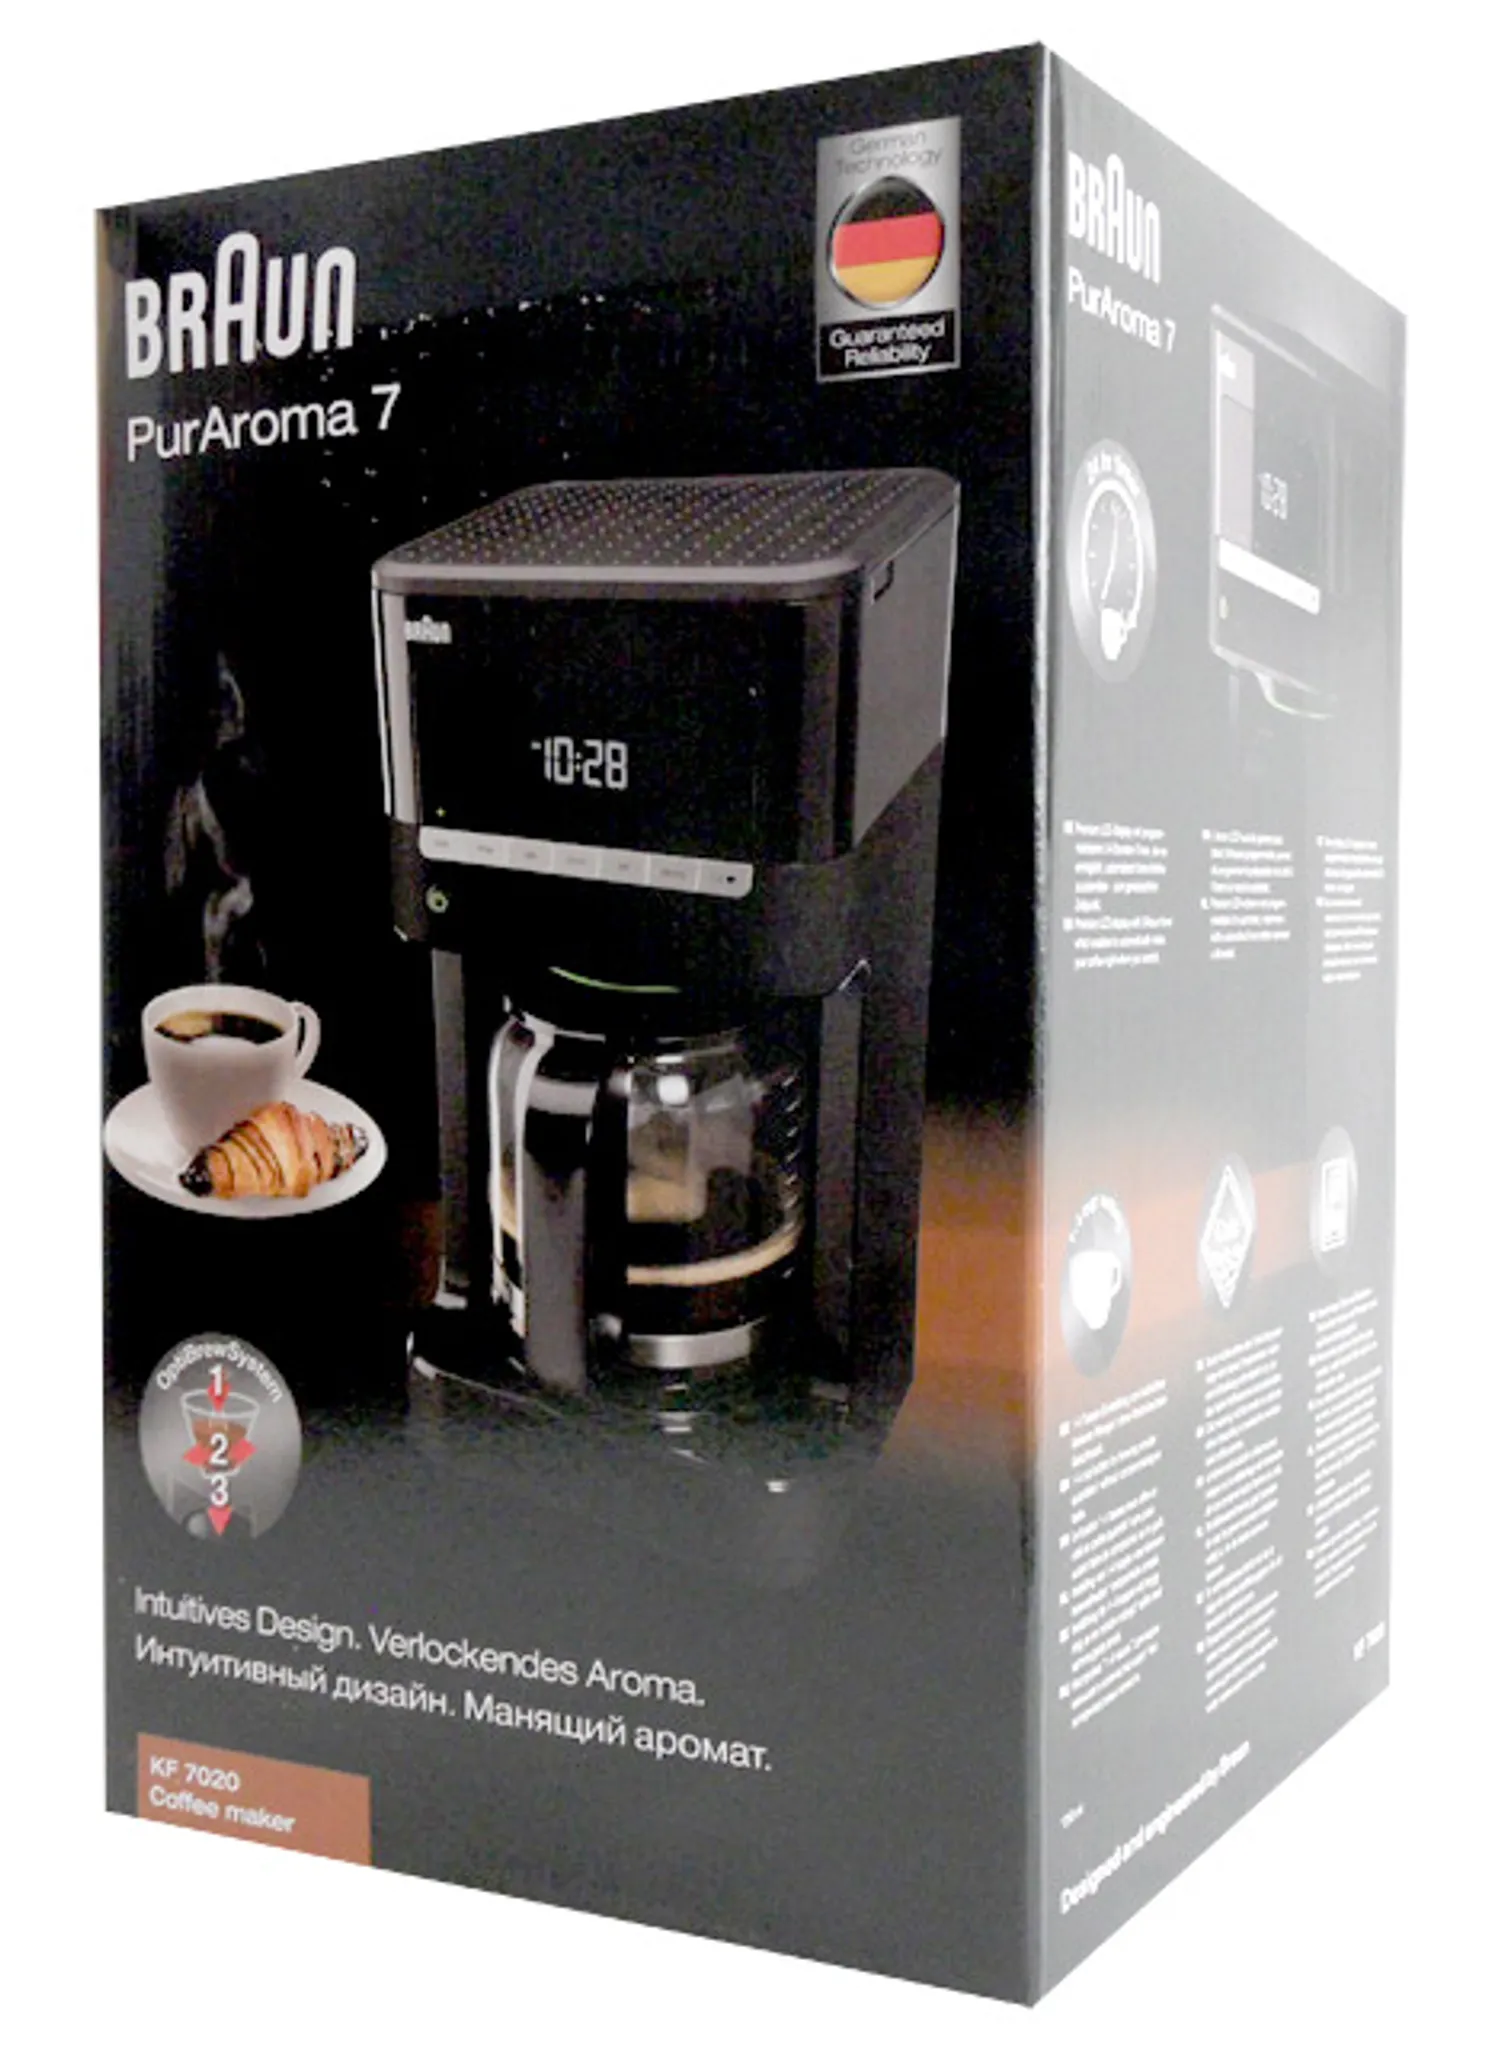 PurAroma Kaffeemaschine Braun 7 KF7020